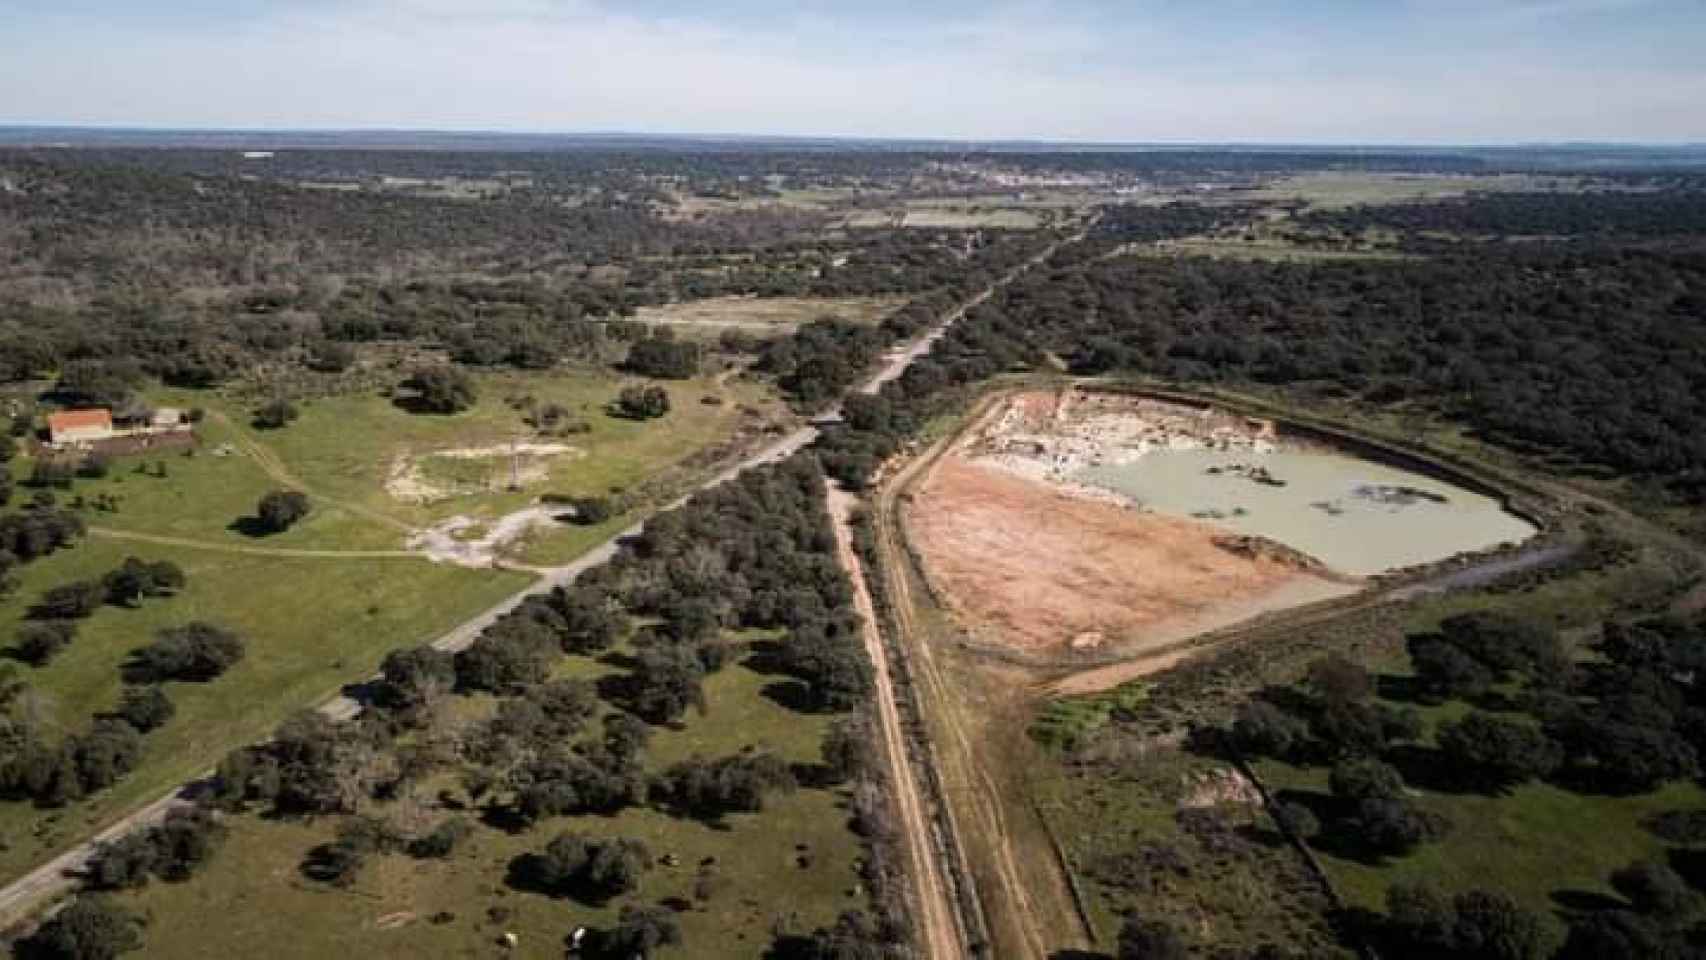 Vista aérea del emplazamiento en Campo Charro, donde se pretende realizar la explotación minera